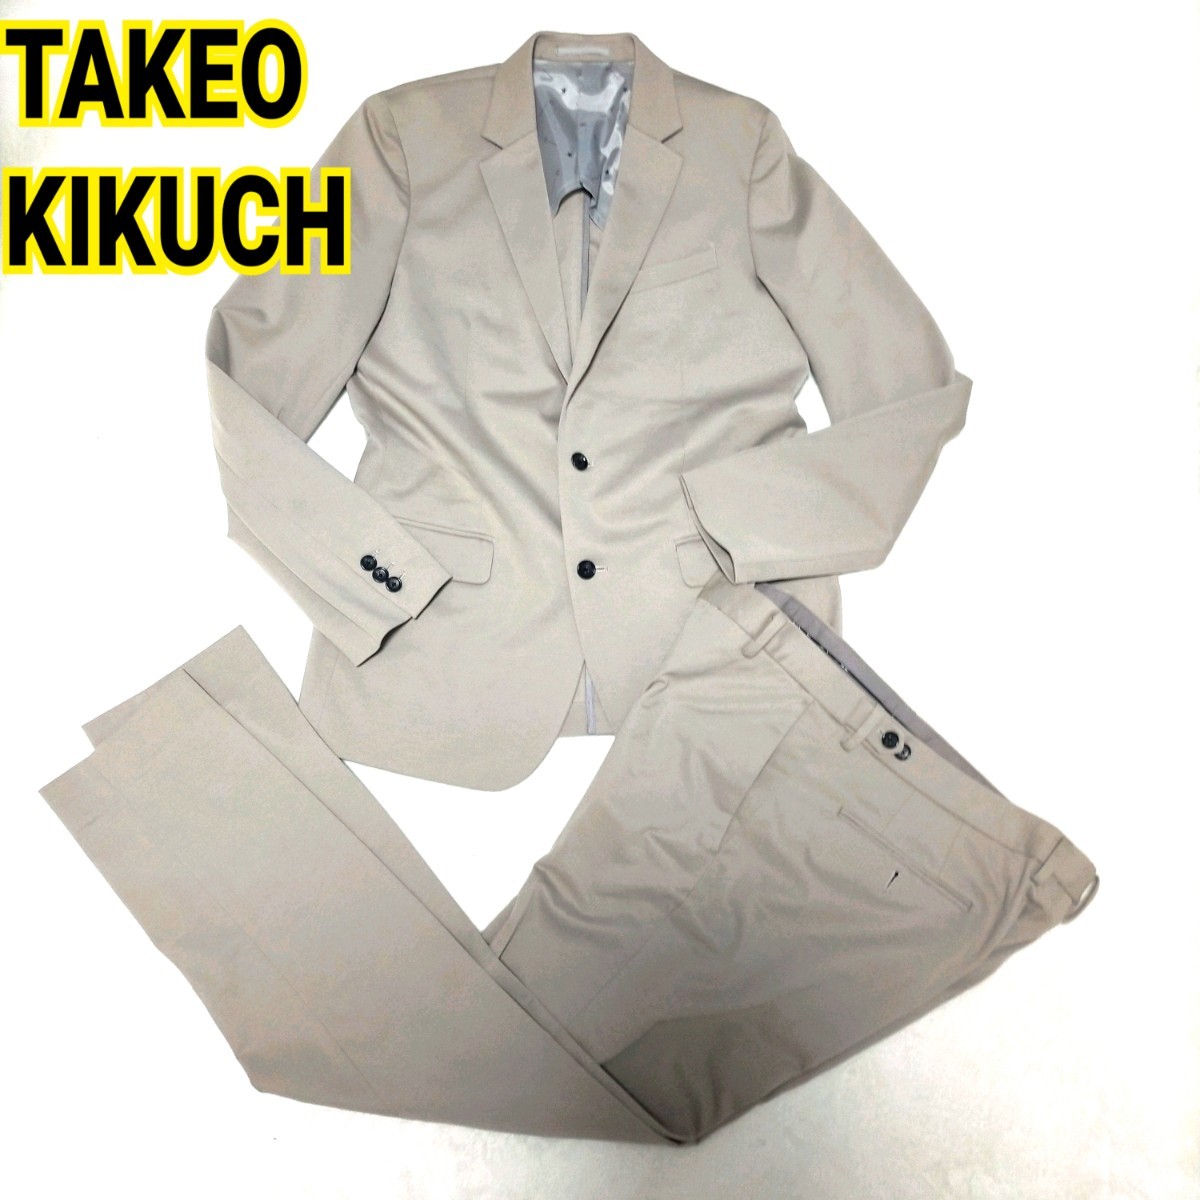 おしゃれ ベージュ セットアップ スーツ タケオキクチ TK美品 TAKEO KIKUCH ベージュ サマー スーツ カジュアル フォーマル 上下セット